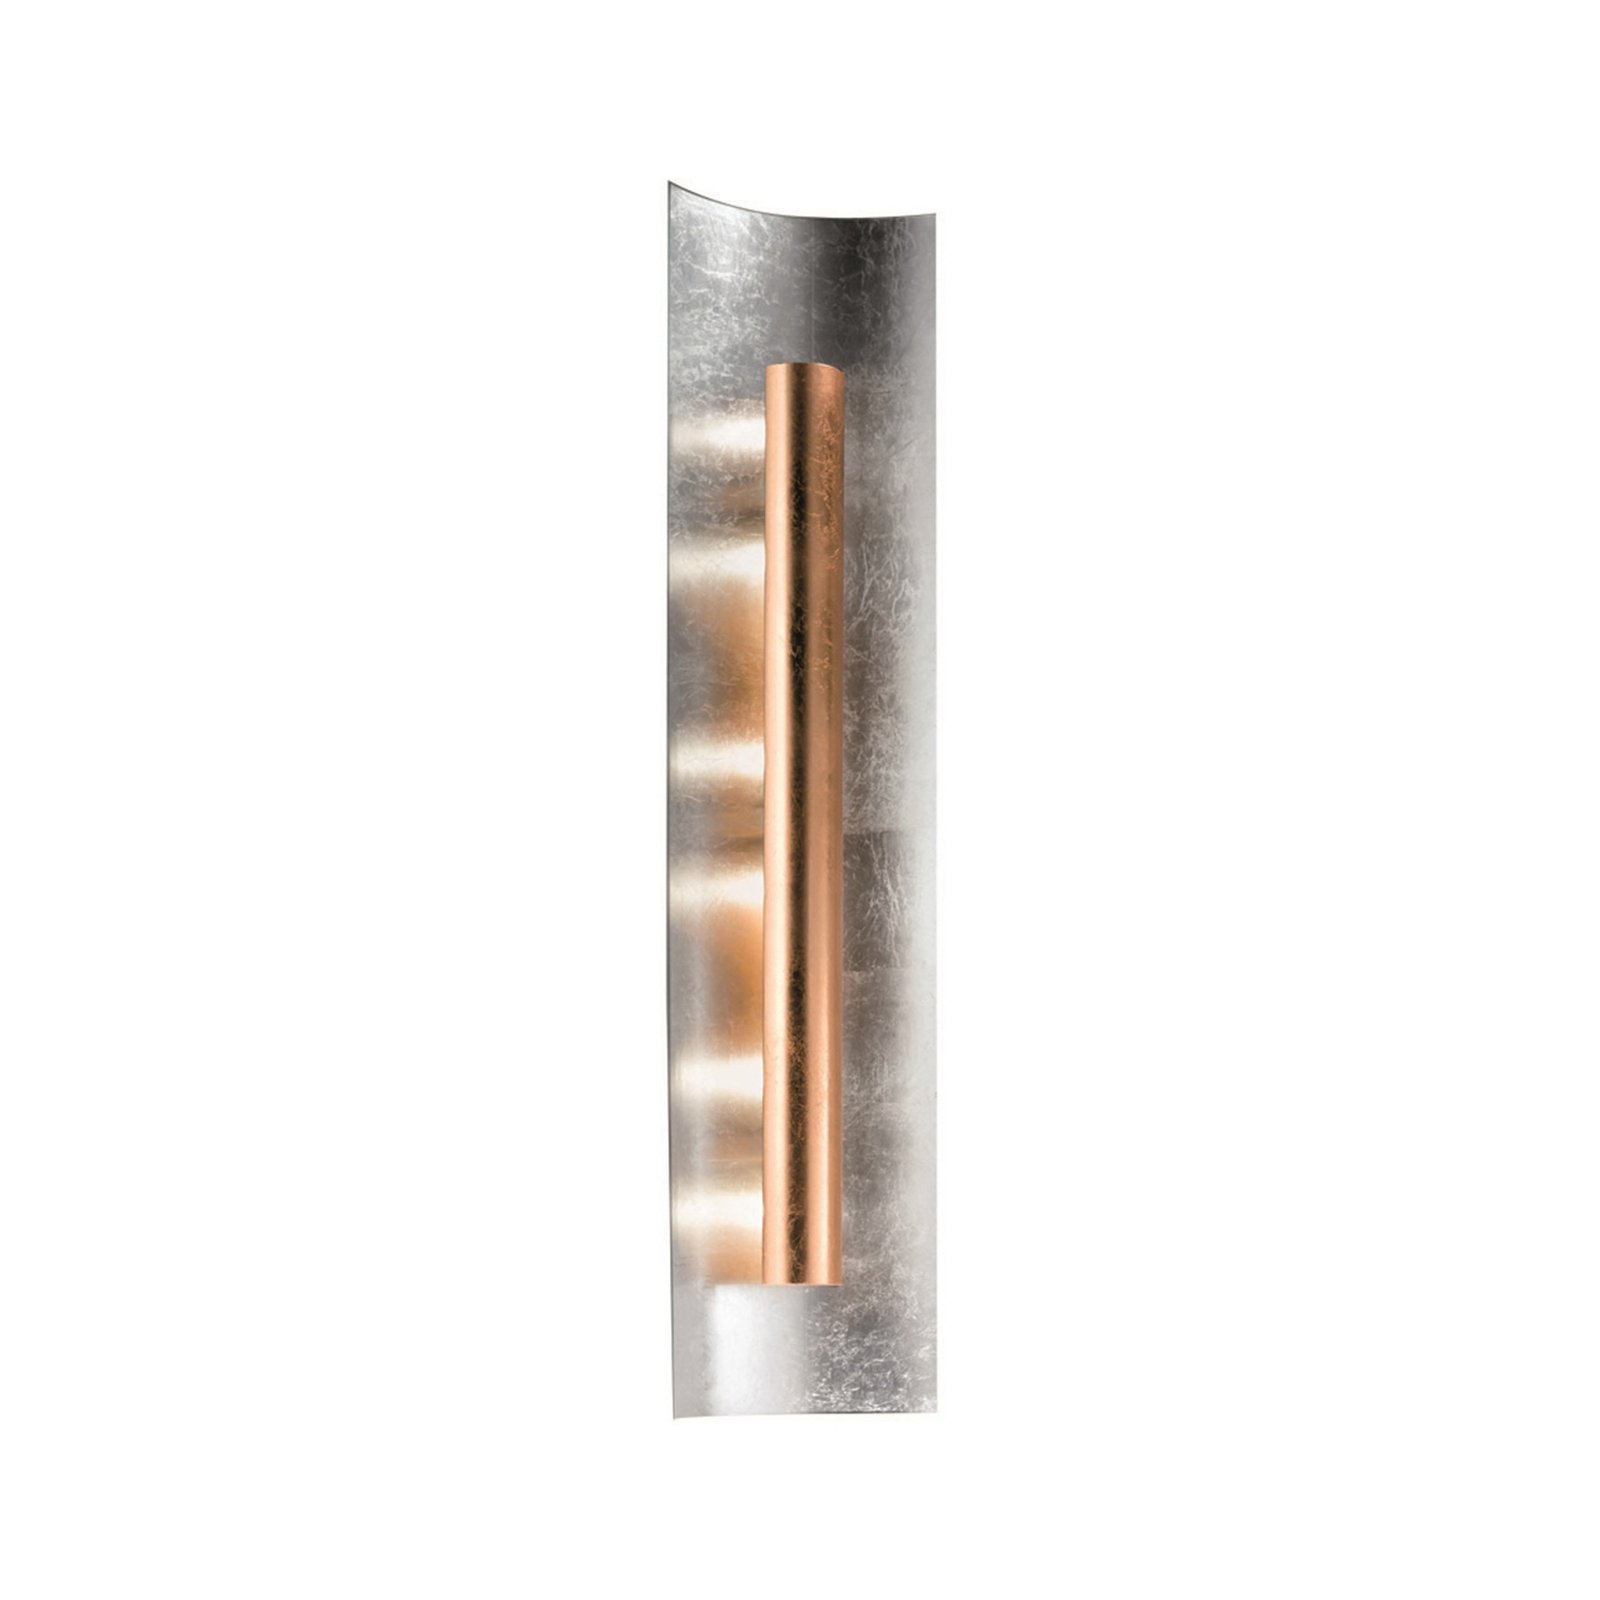 Aura Silber wall light copper shade, height 30cm